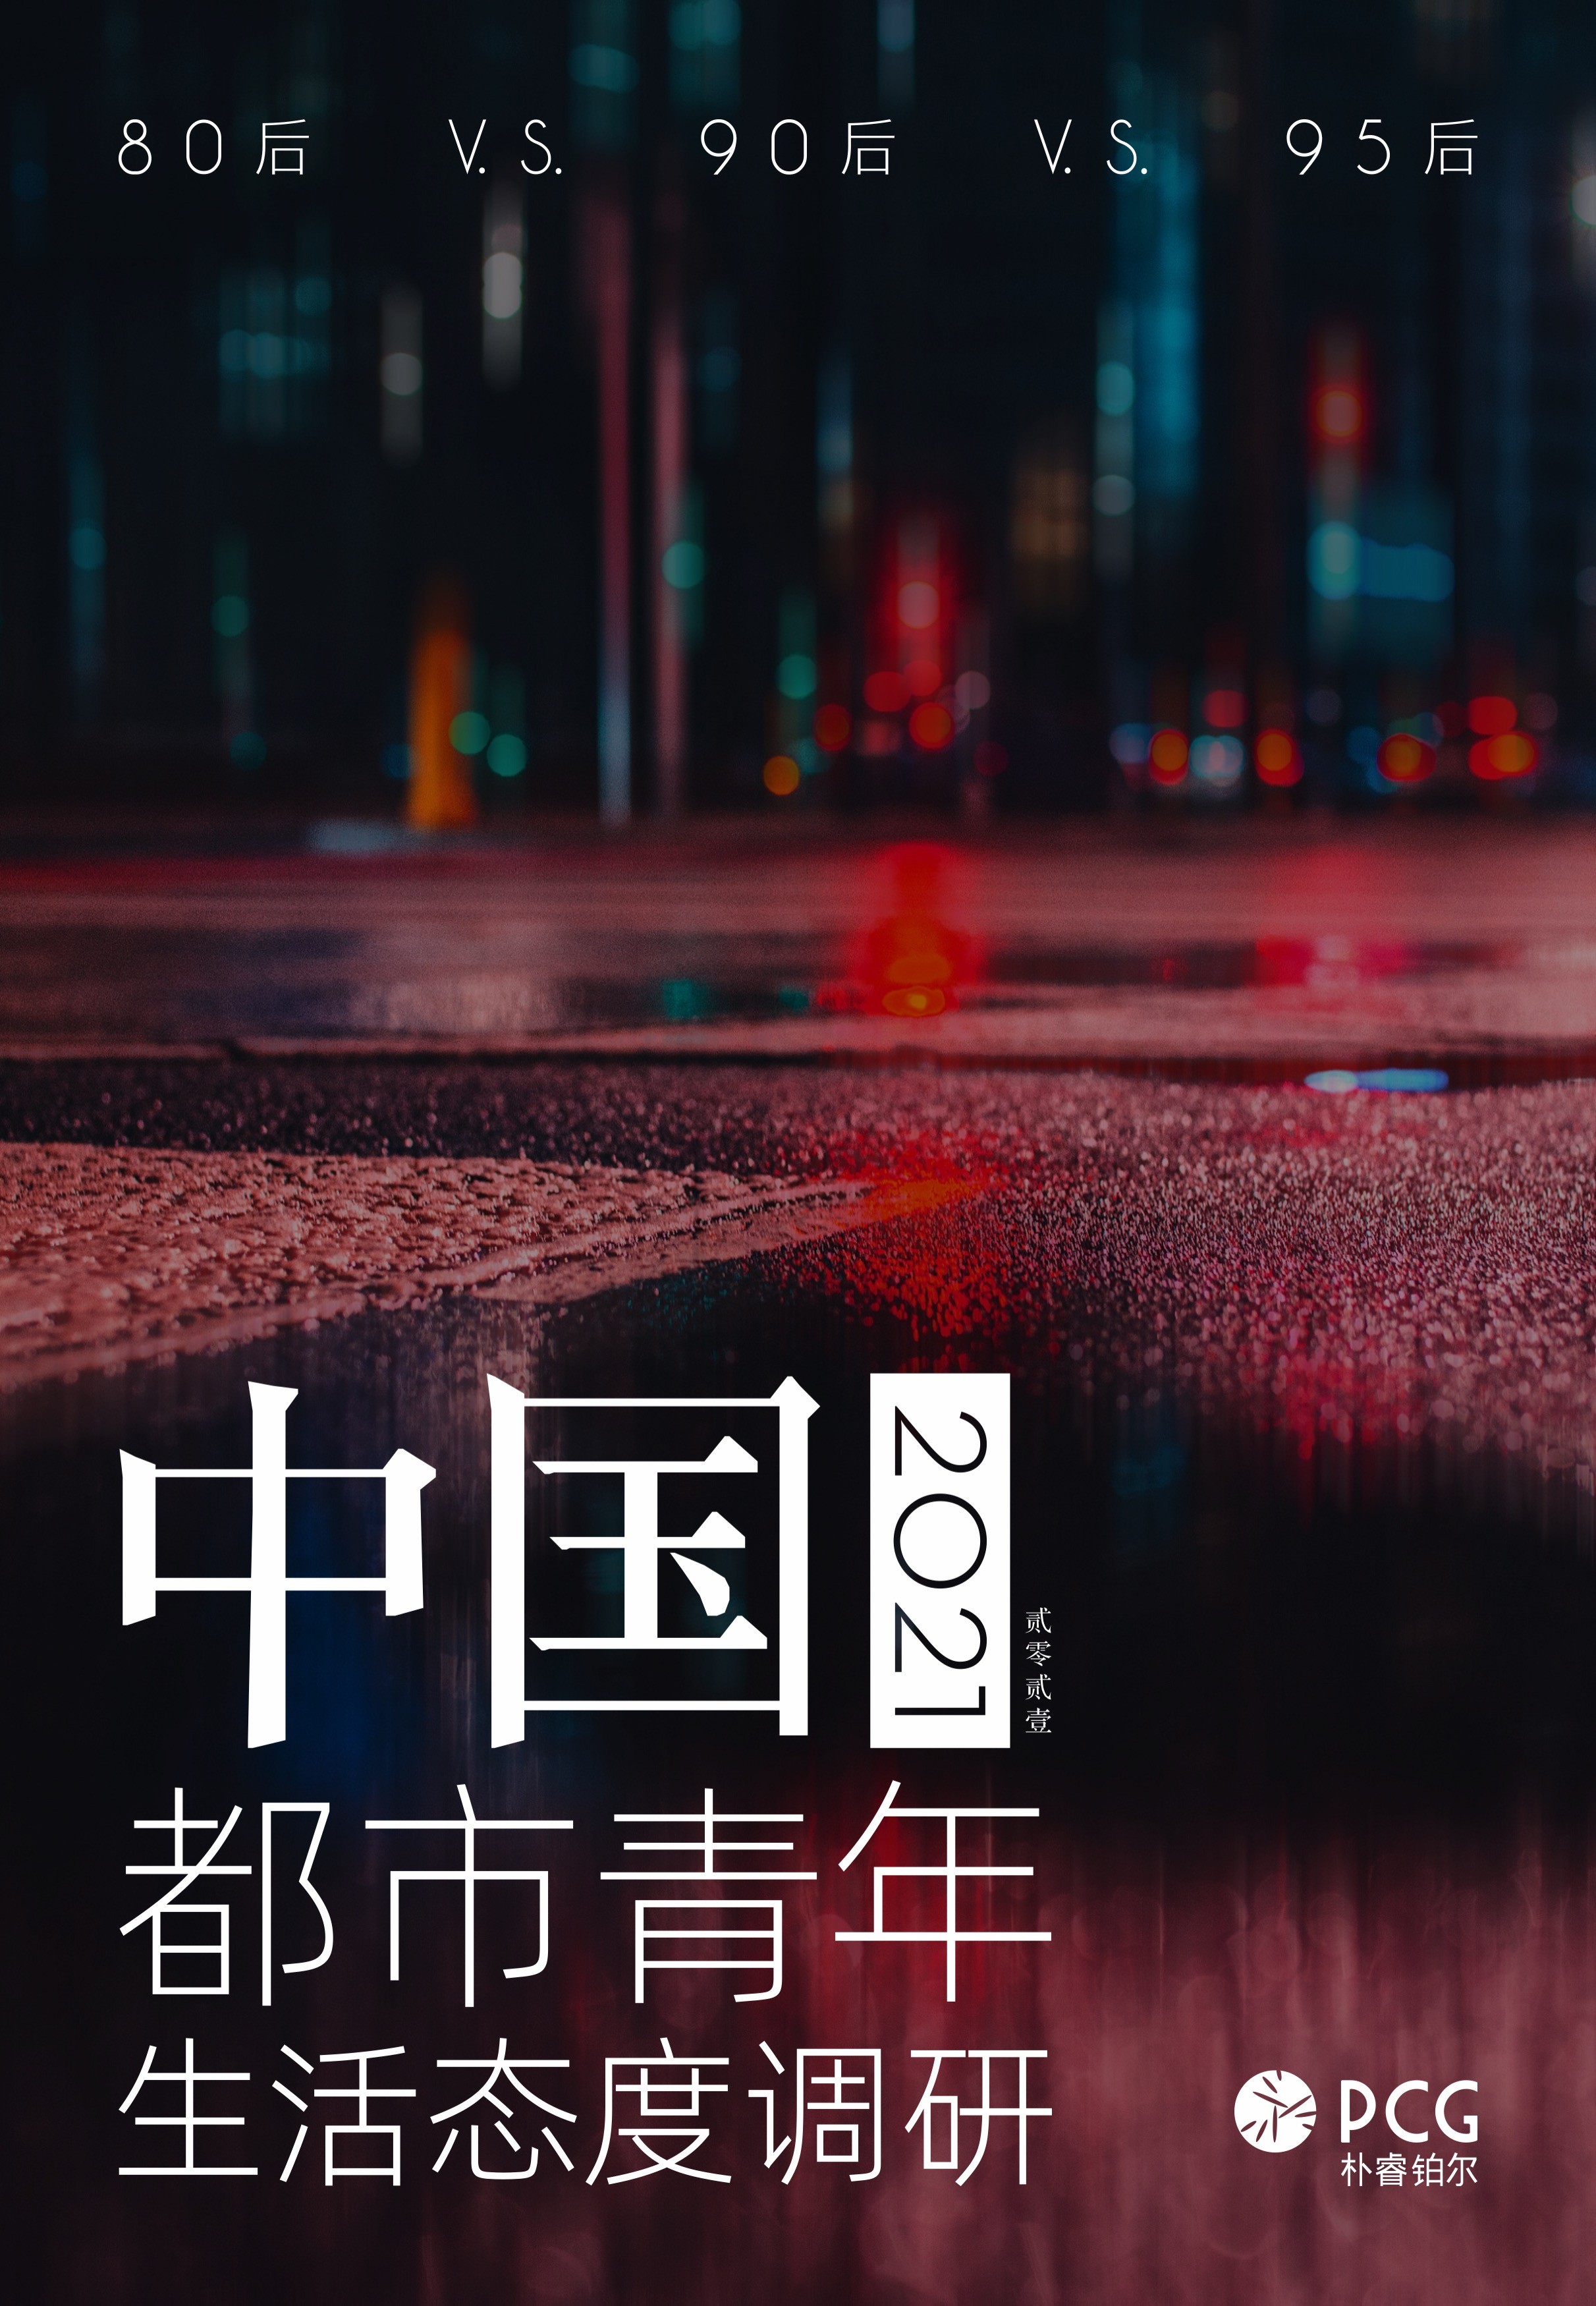 朴睿铂尔(PCG)《2021中国都市青年生活态度调研》报告正式发布